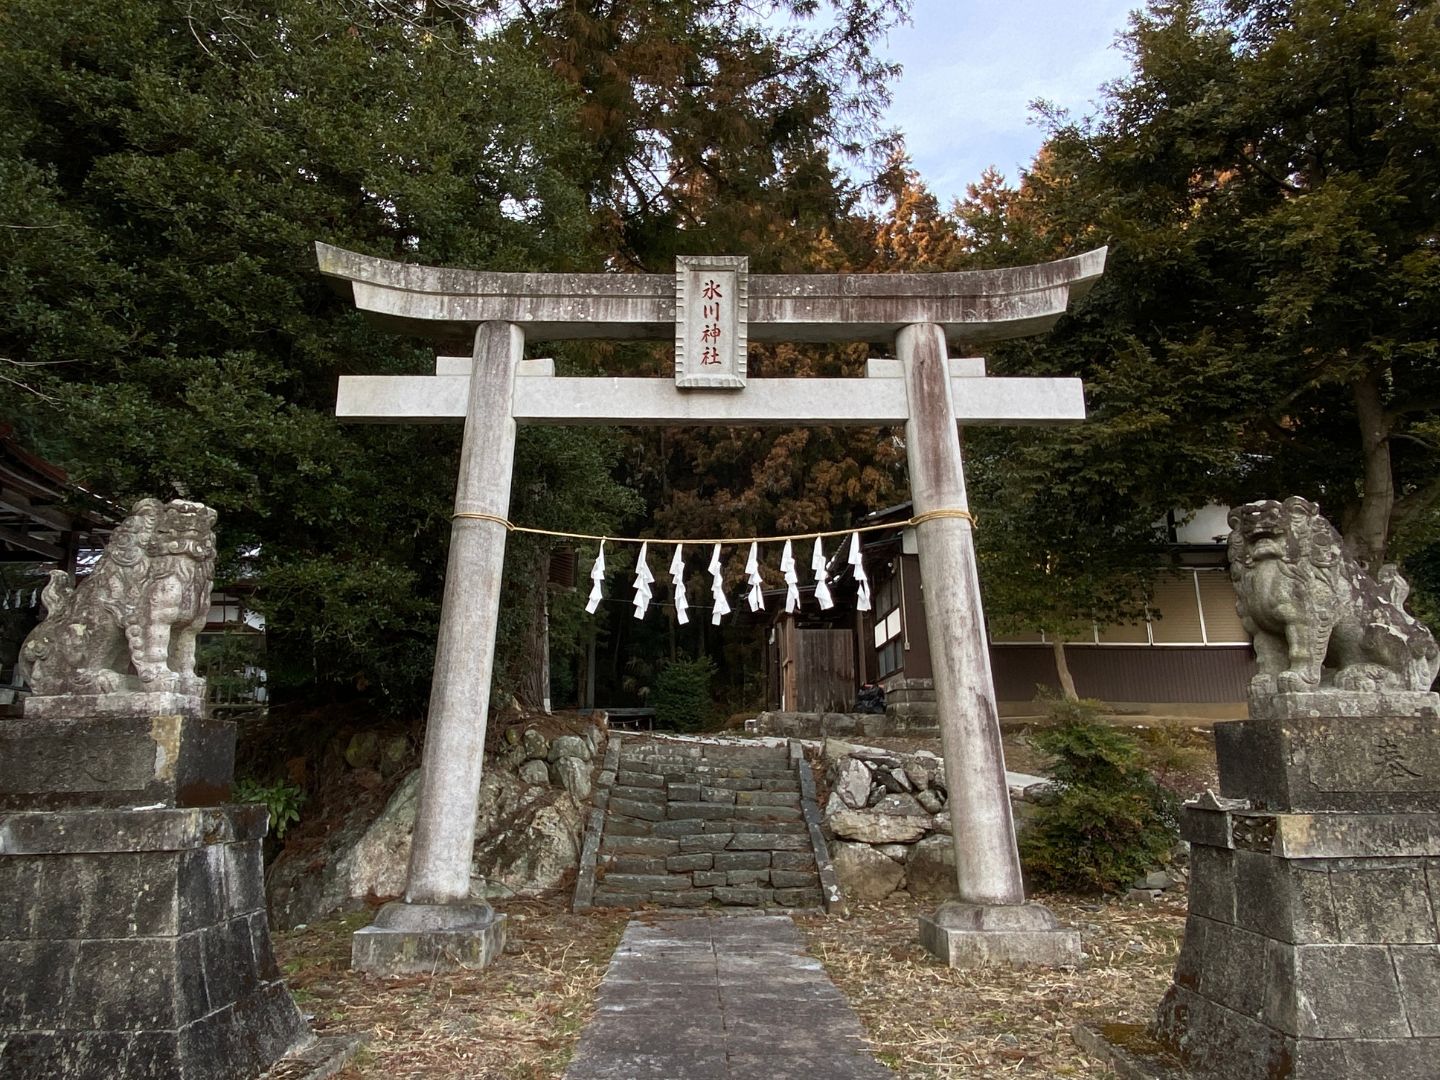 腰越氷川神社 鳥居と狛犬(こまいぬ)